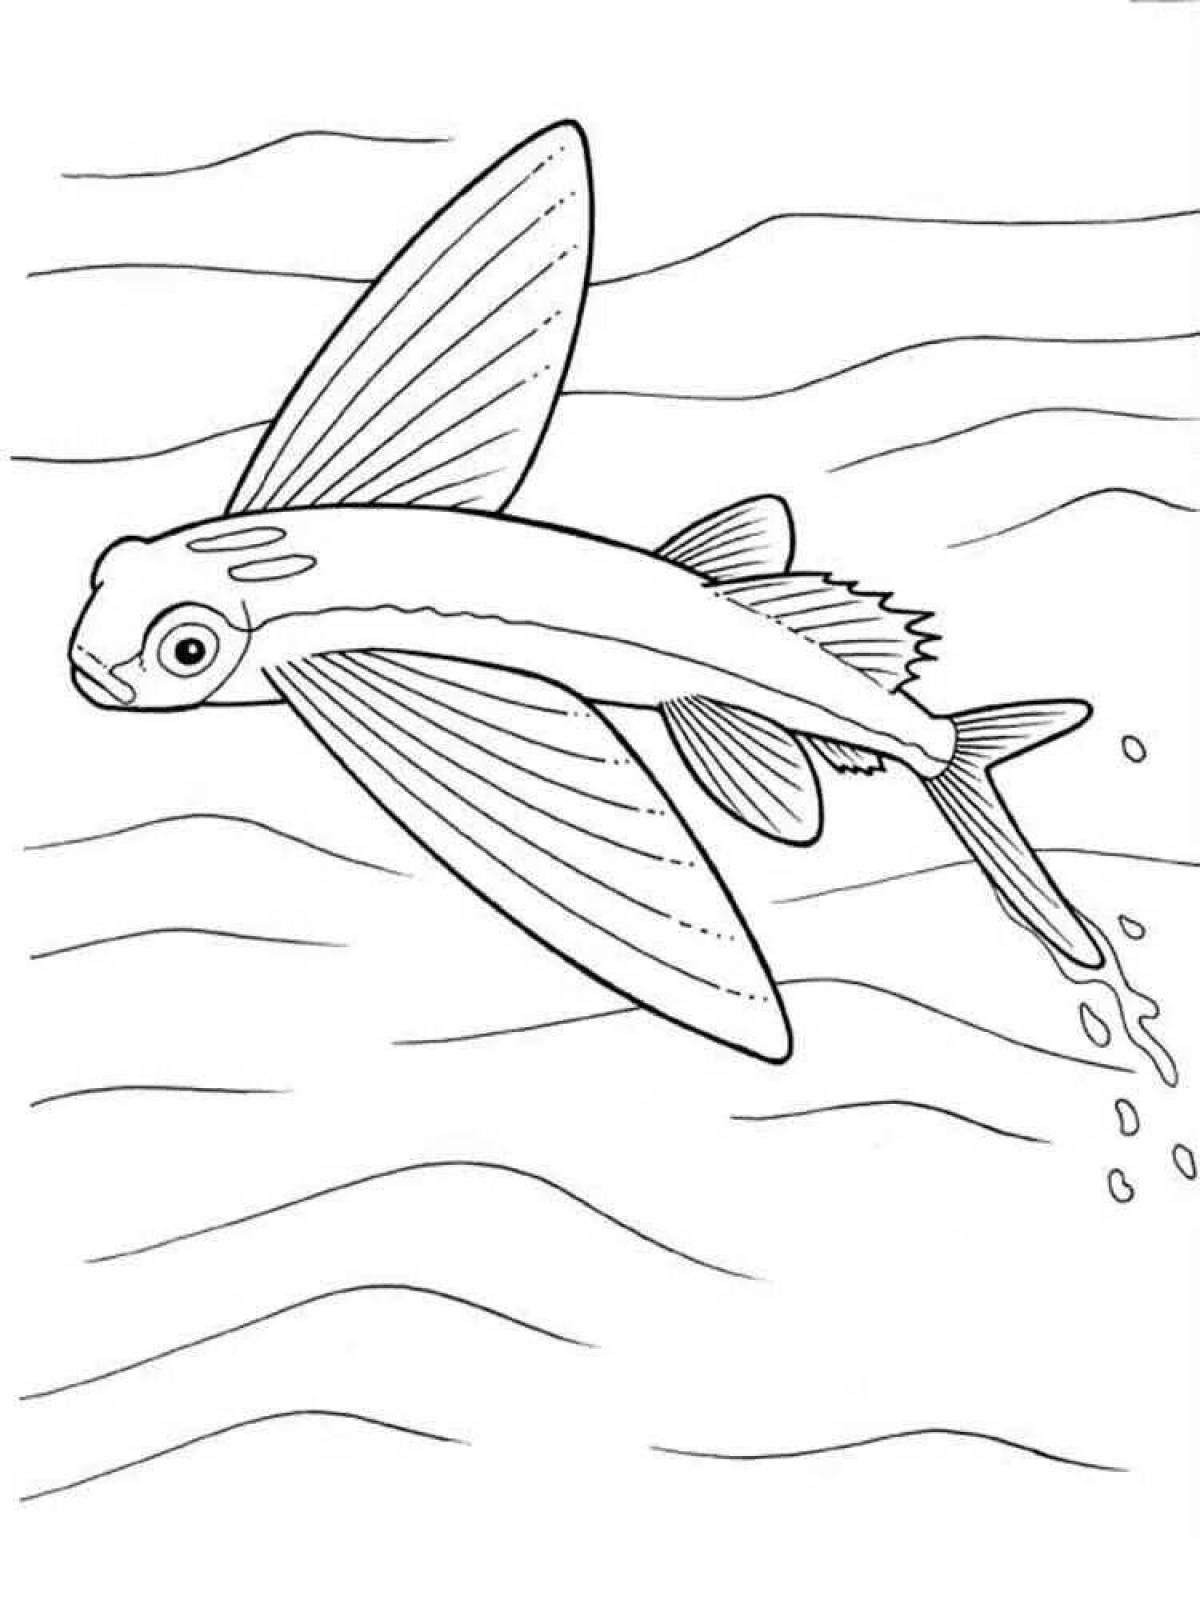 Фото Ярко окрашенная страница раскраски летучей рыбы